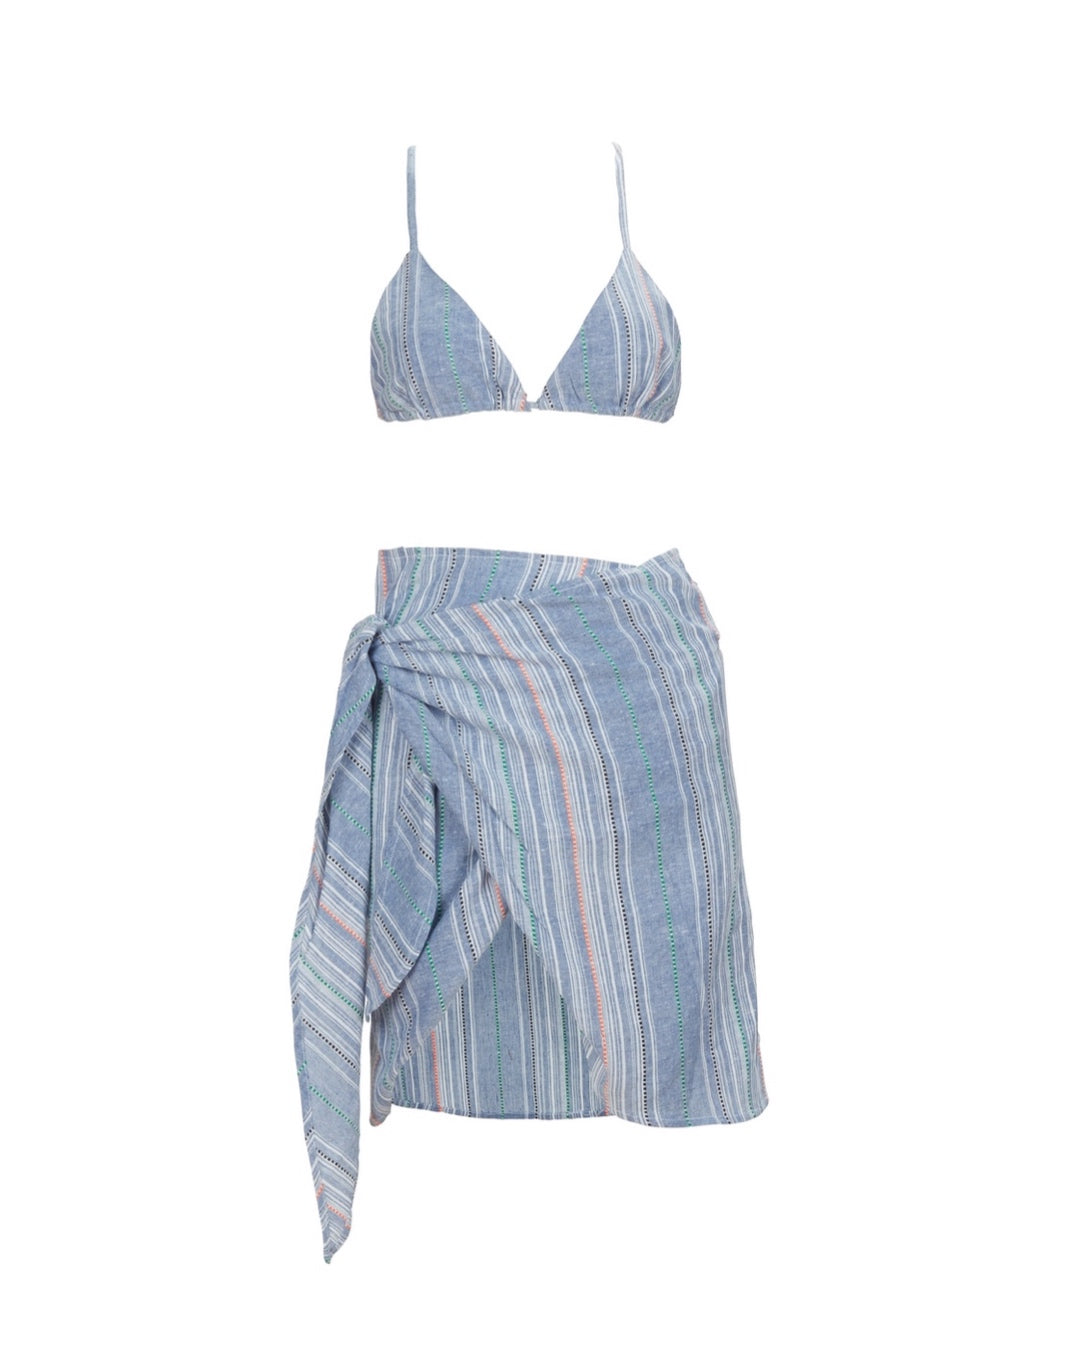 חצאית וטופ מלדיביים- Maldivian skirt x top